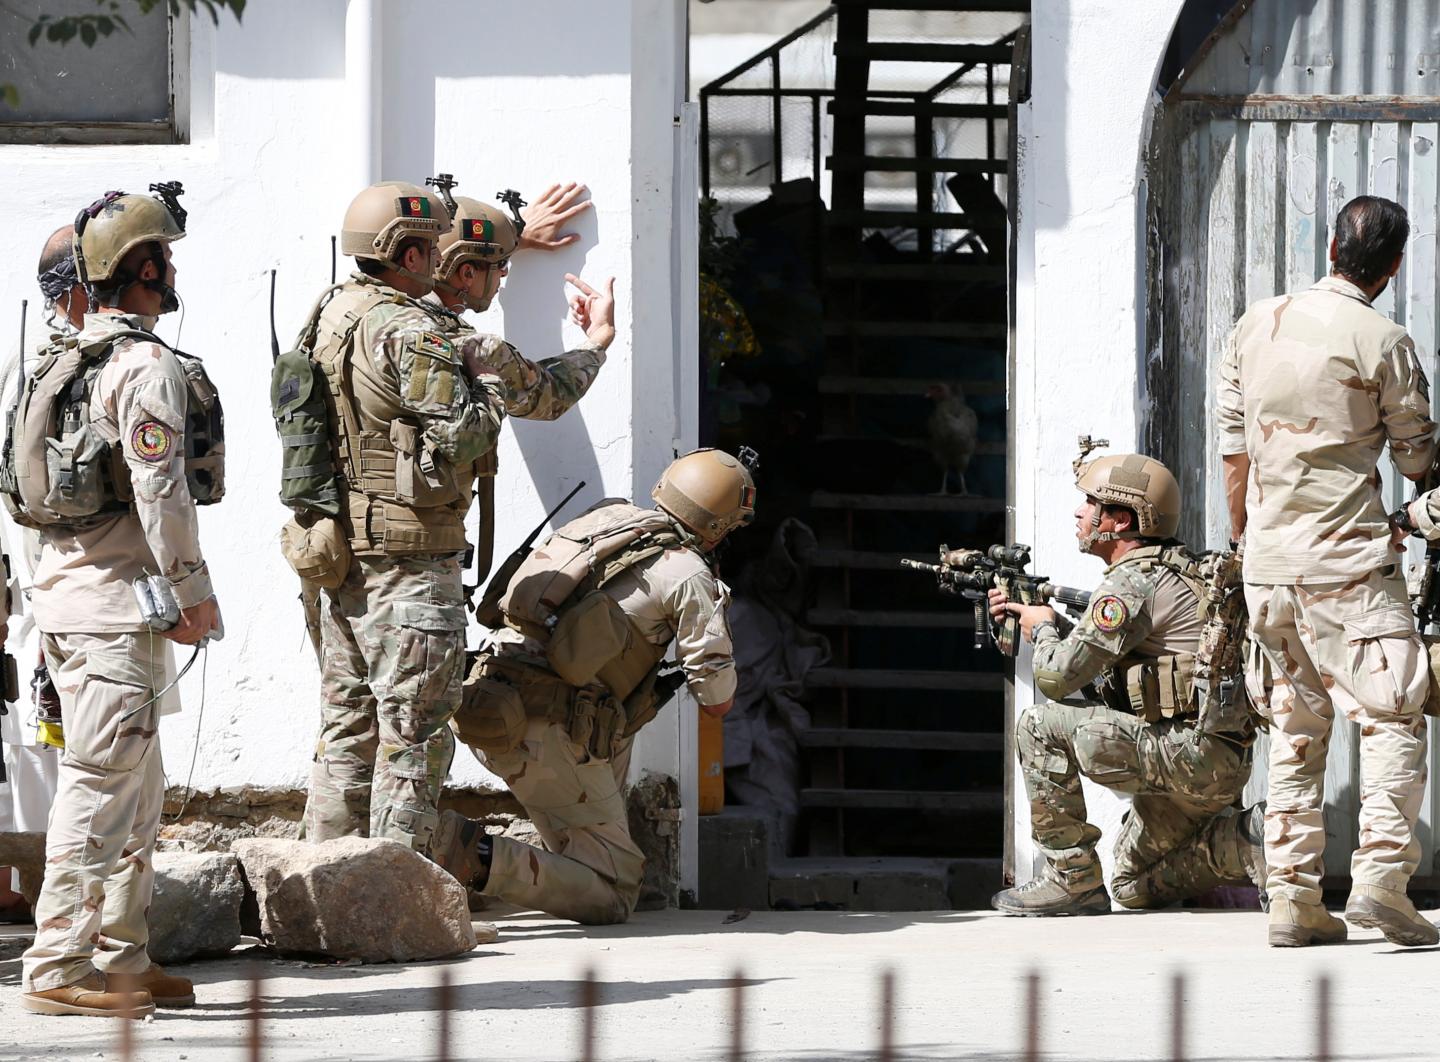 Поблизу мечеті в Афганістані підірвався смертник: щонайменше 20 людей загинуло